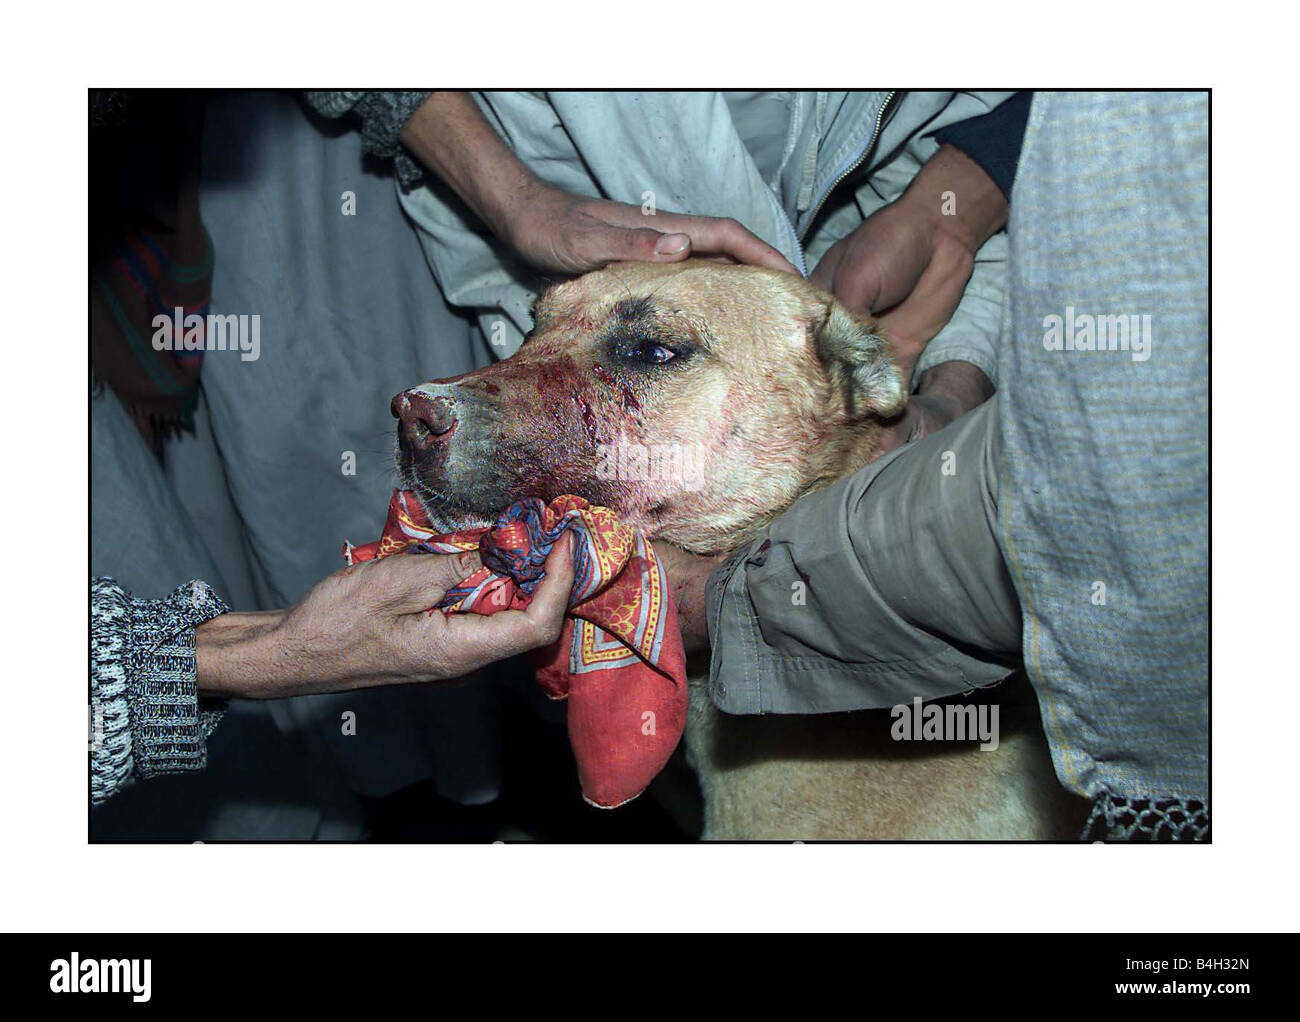 Les combats d'animaux combats de chiens à Kaboul Afghanistan Décembre 2001 Mirrorpix Banque D'Images